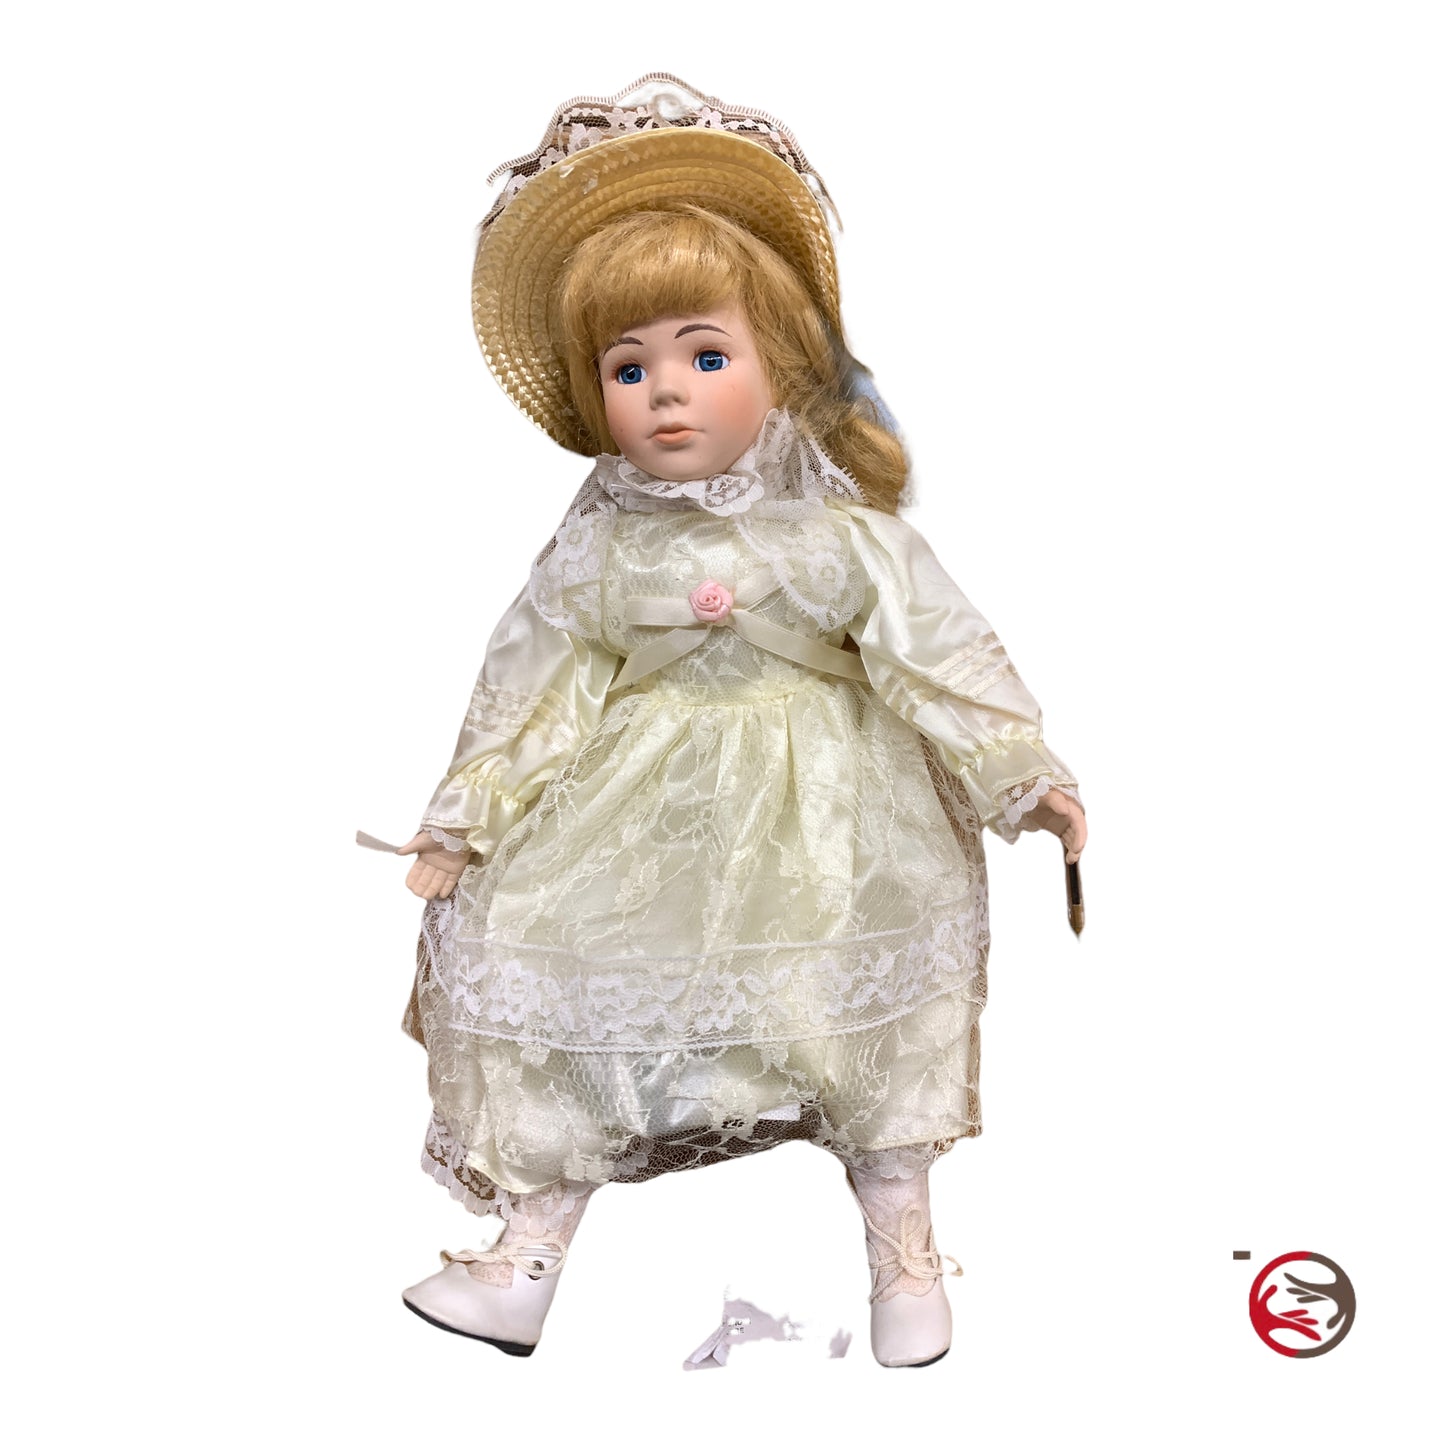 bambola porcellana alta cm 40 vestito pizzo sposa e cappellino